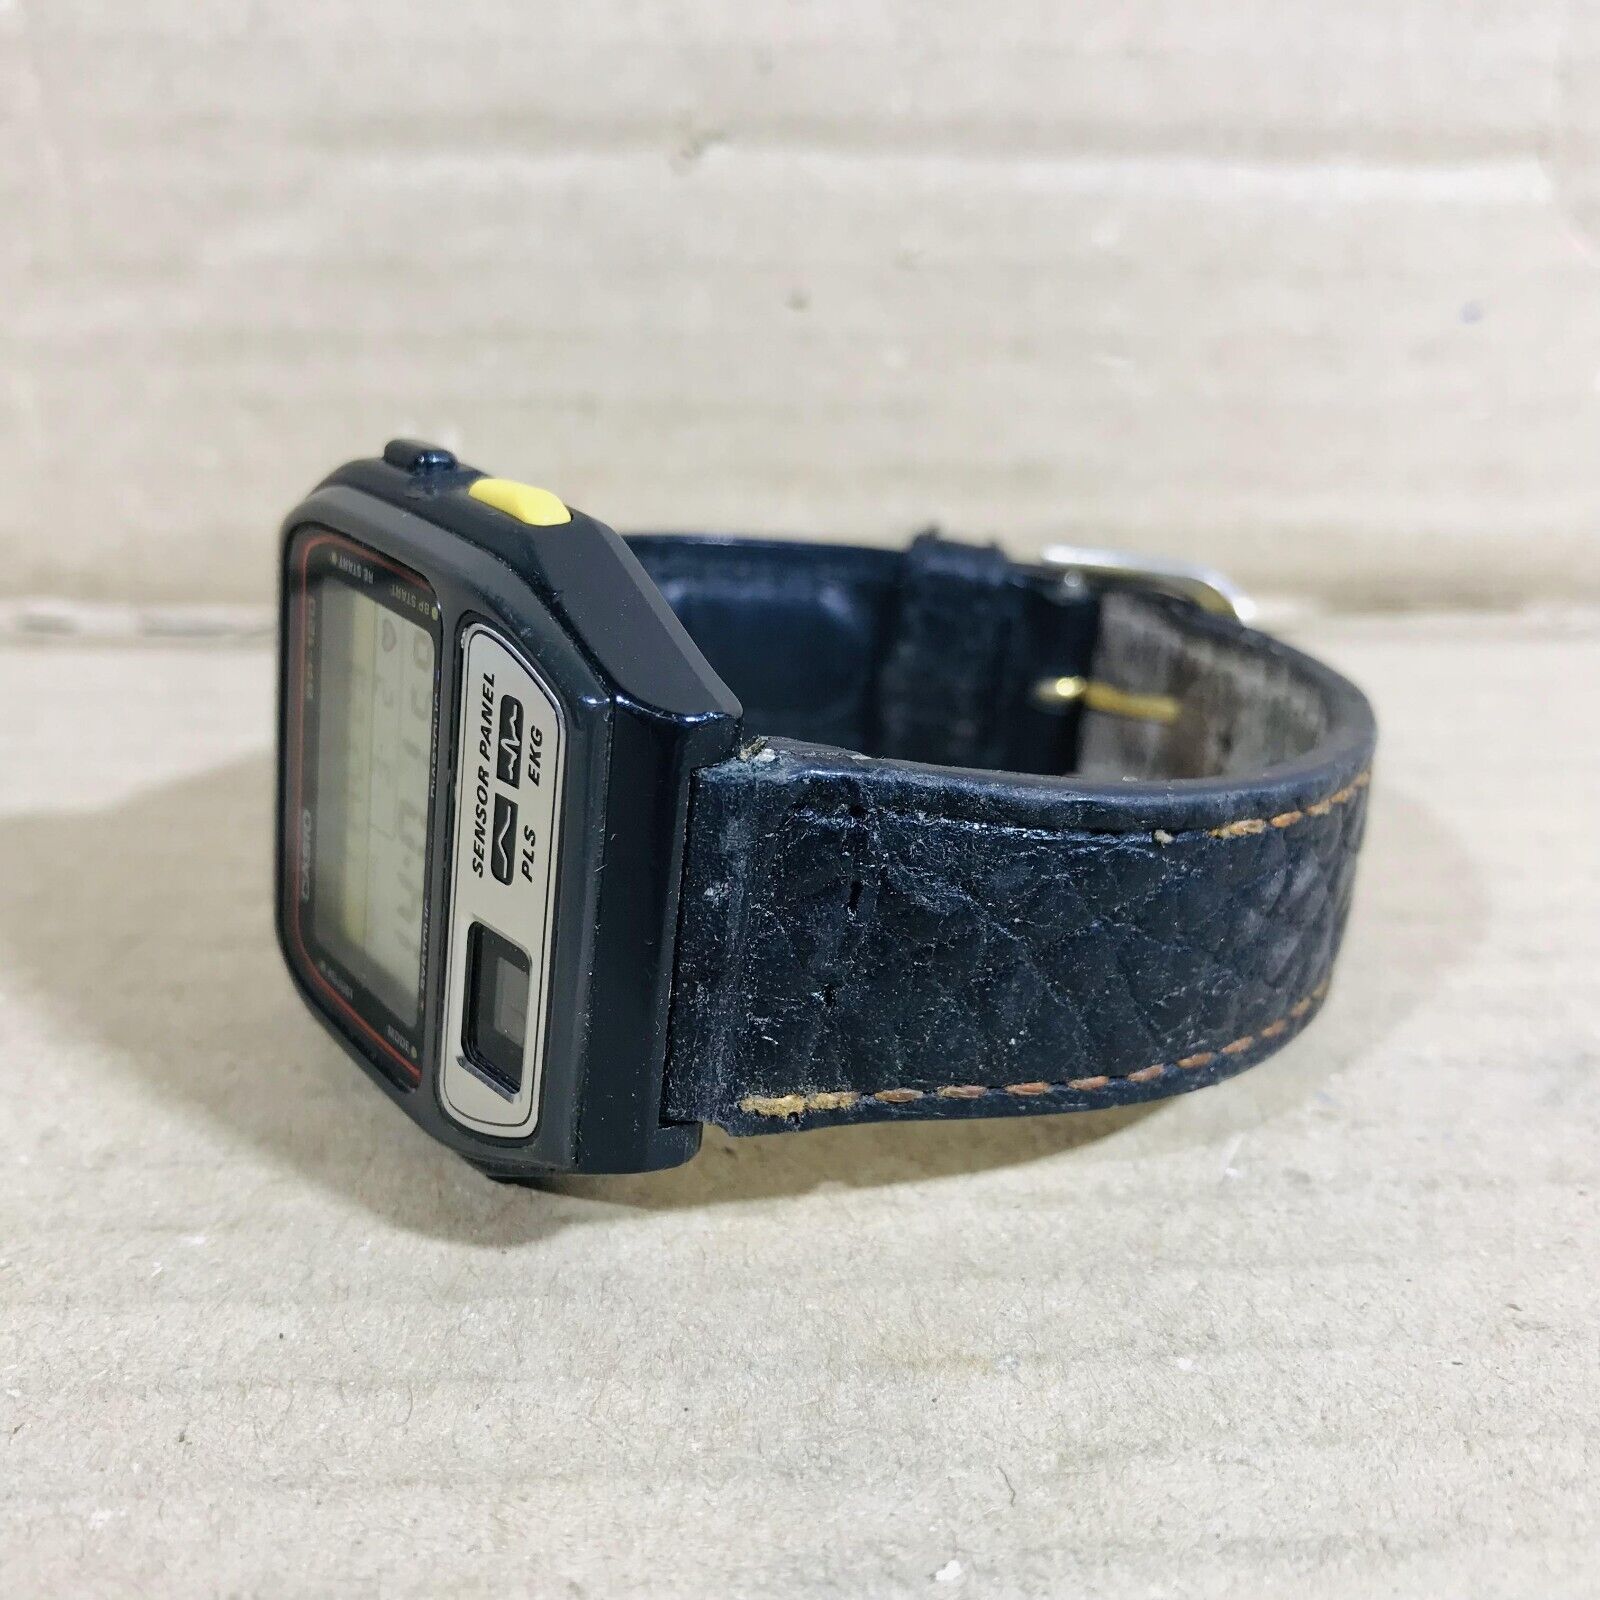 レア Vintage Casio BP-1 脈拍計セット - 時計